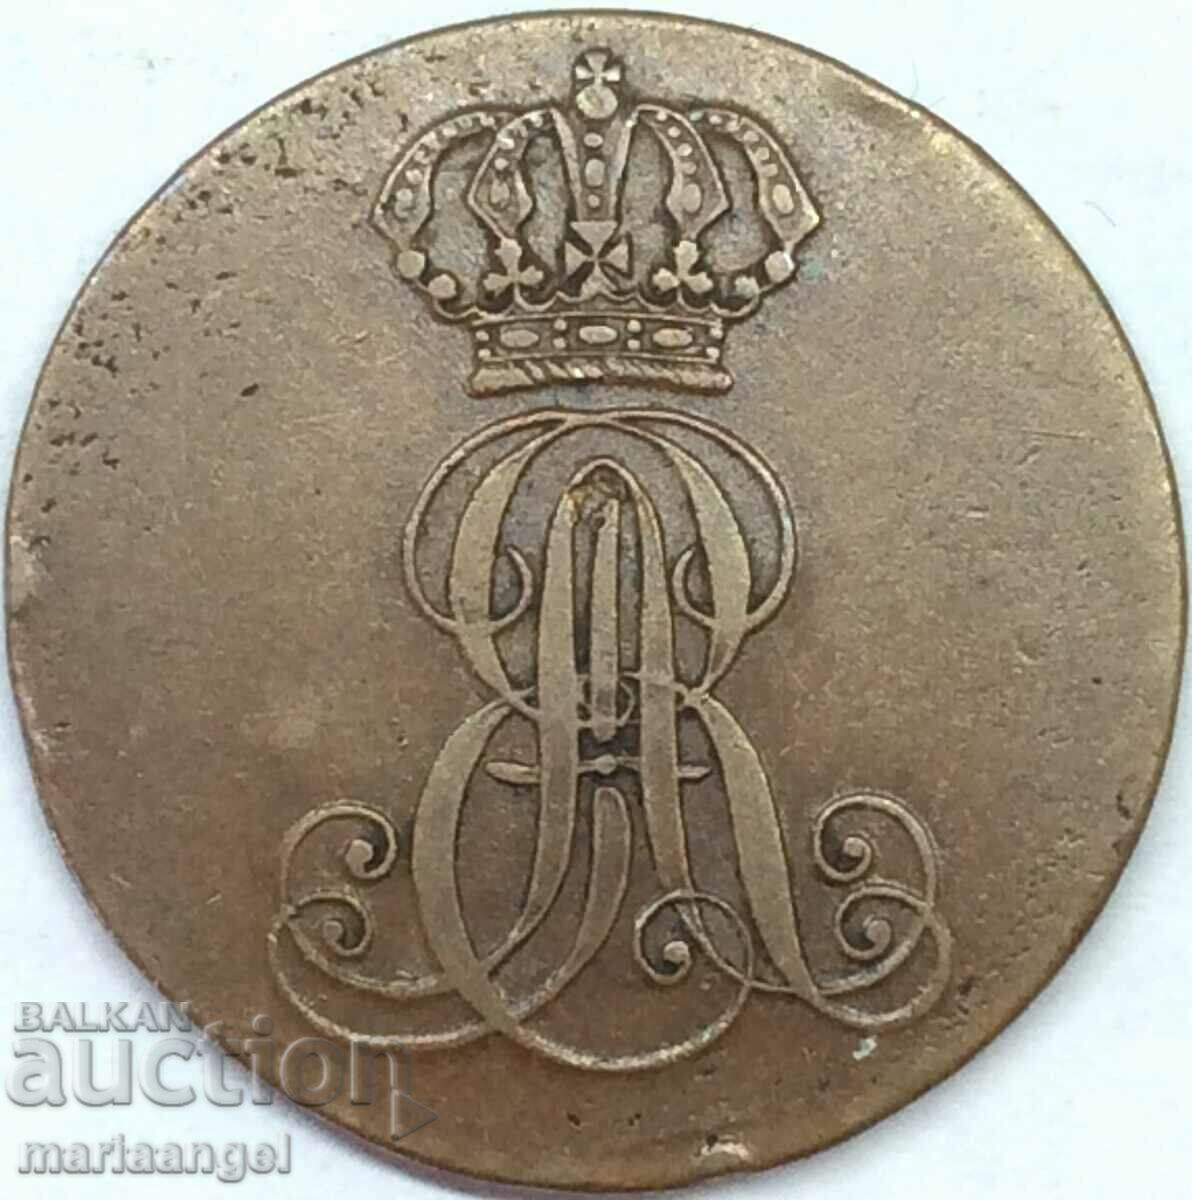 2 Pfennig 1839 Germania Hanovra - an rar